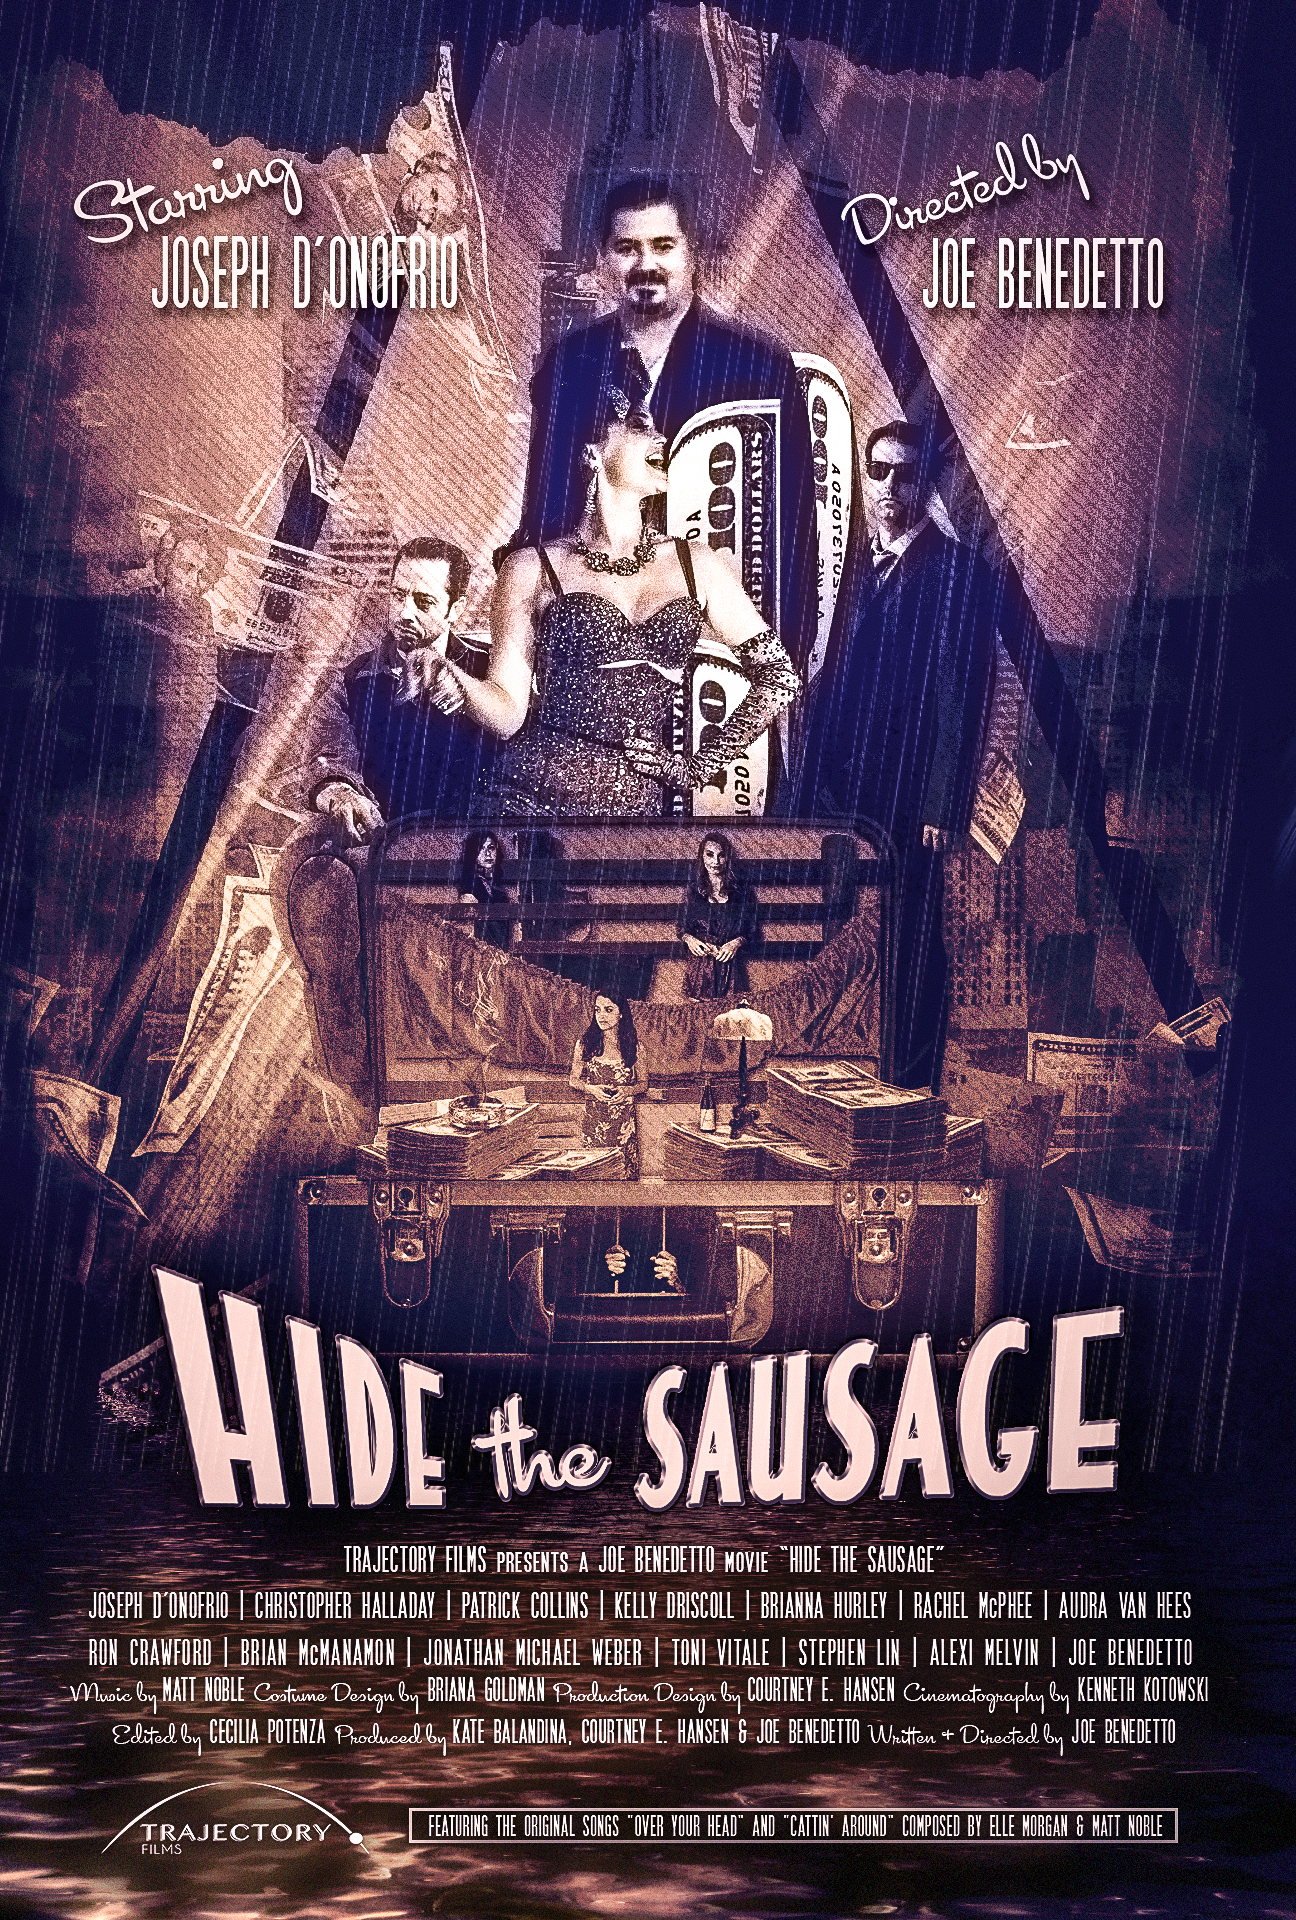 "Hide The Sausage"